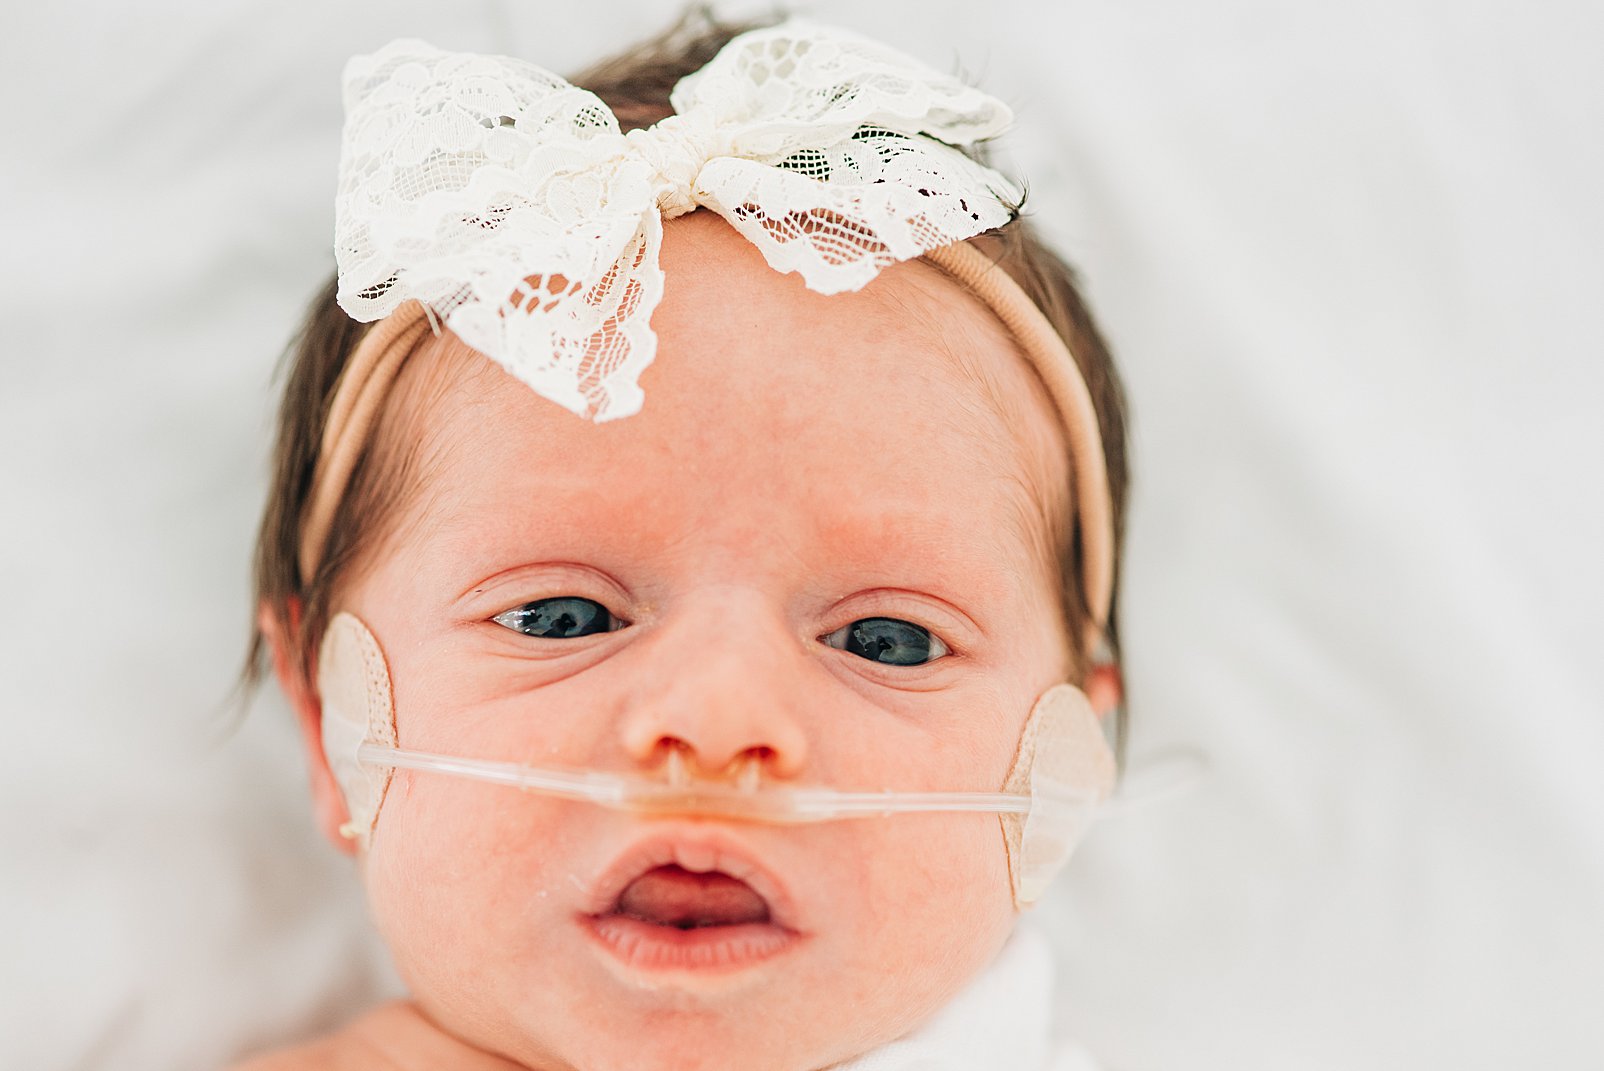 Newborn baby with oxygen